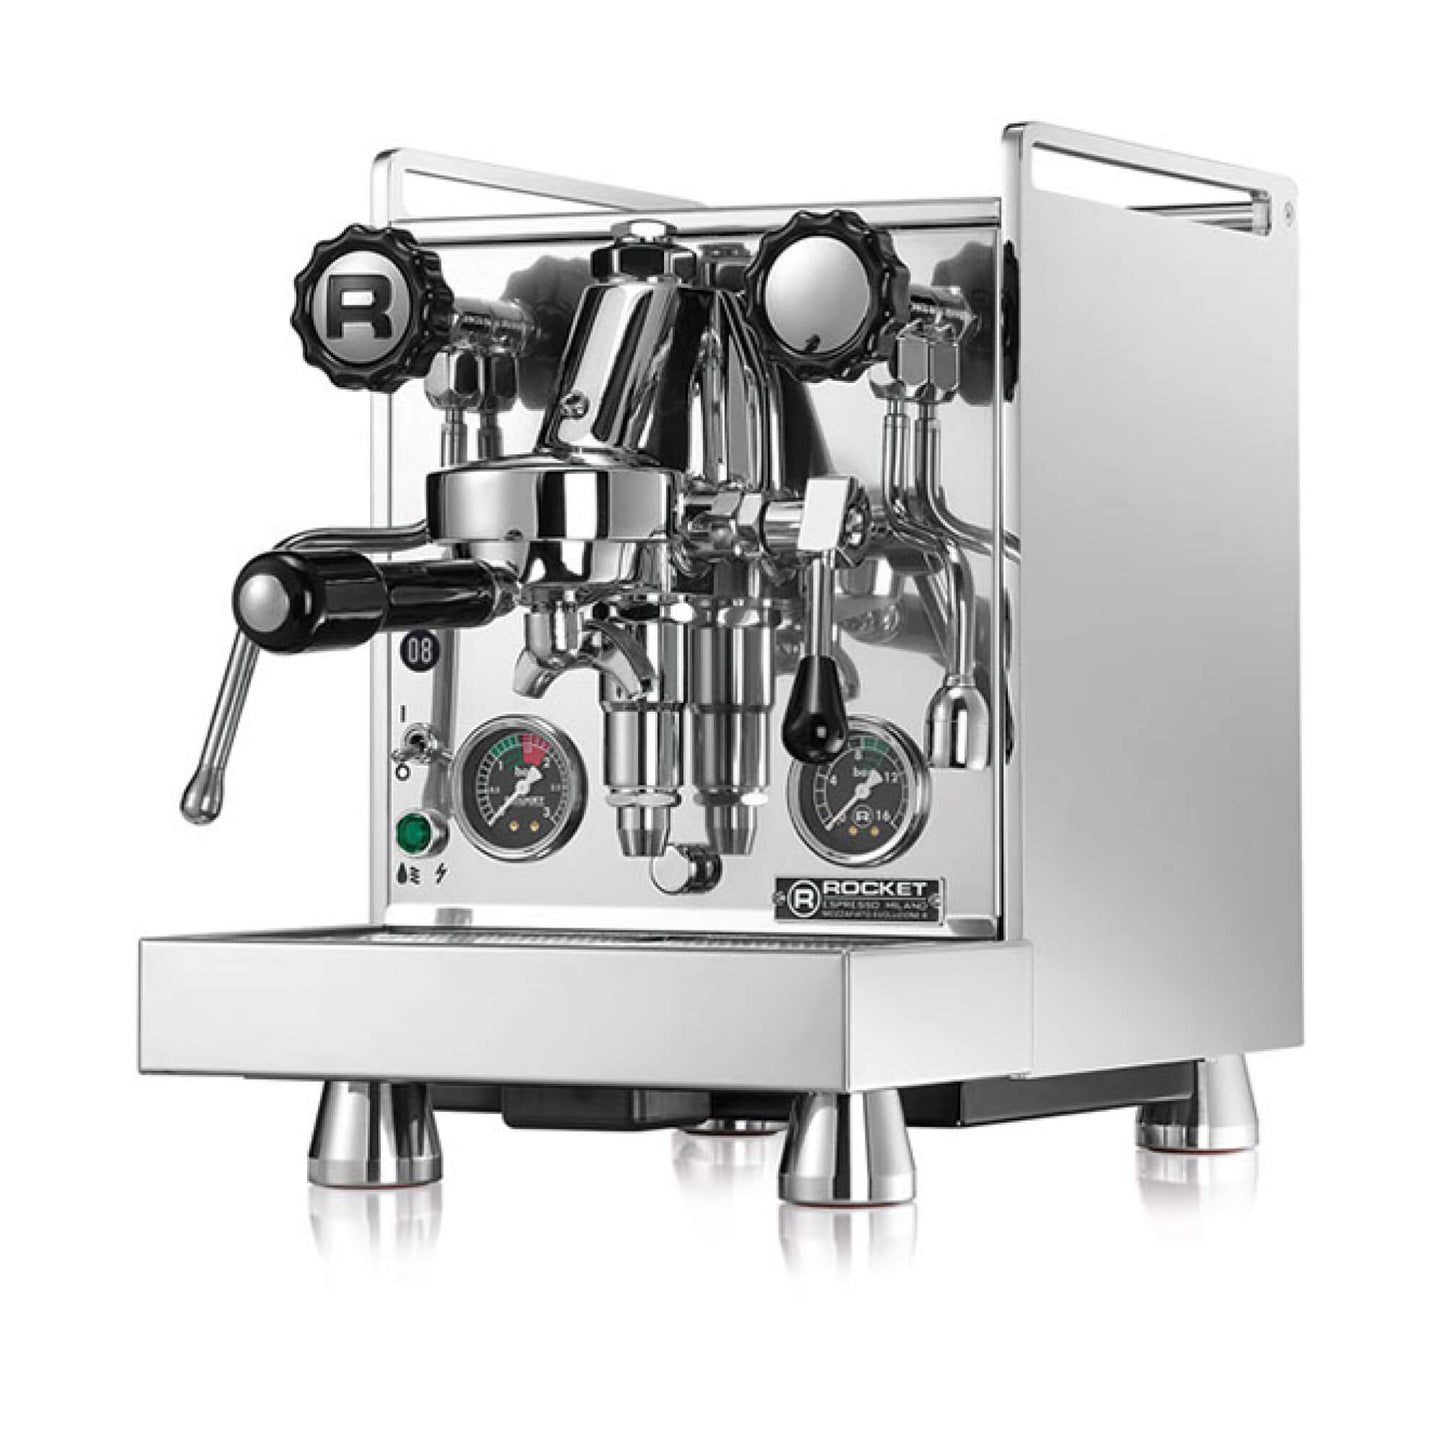 Rocket Mozzafiato Cronometro R ST Espresso Machine